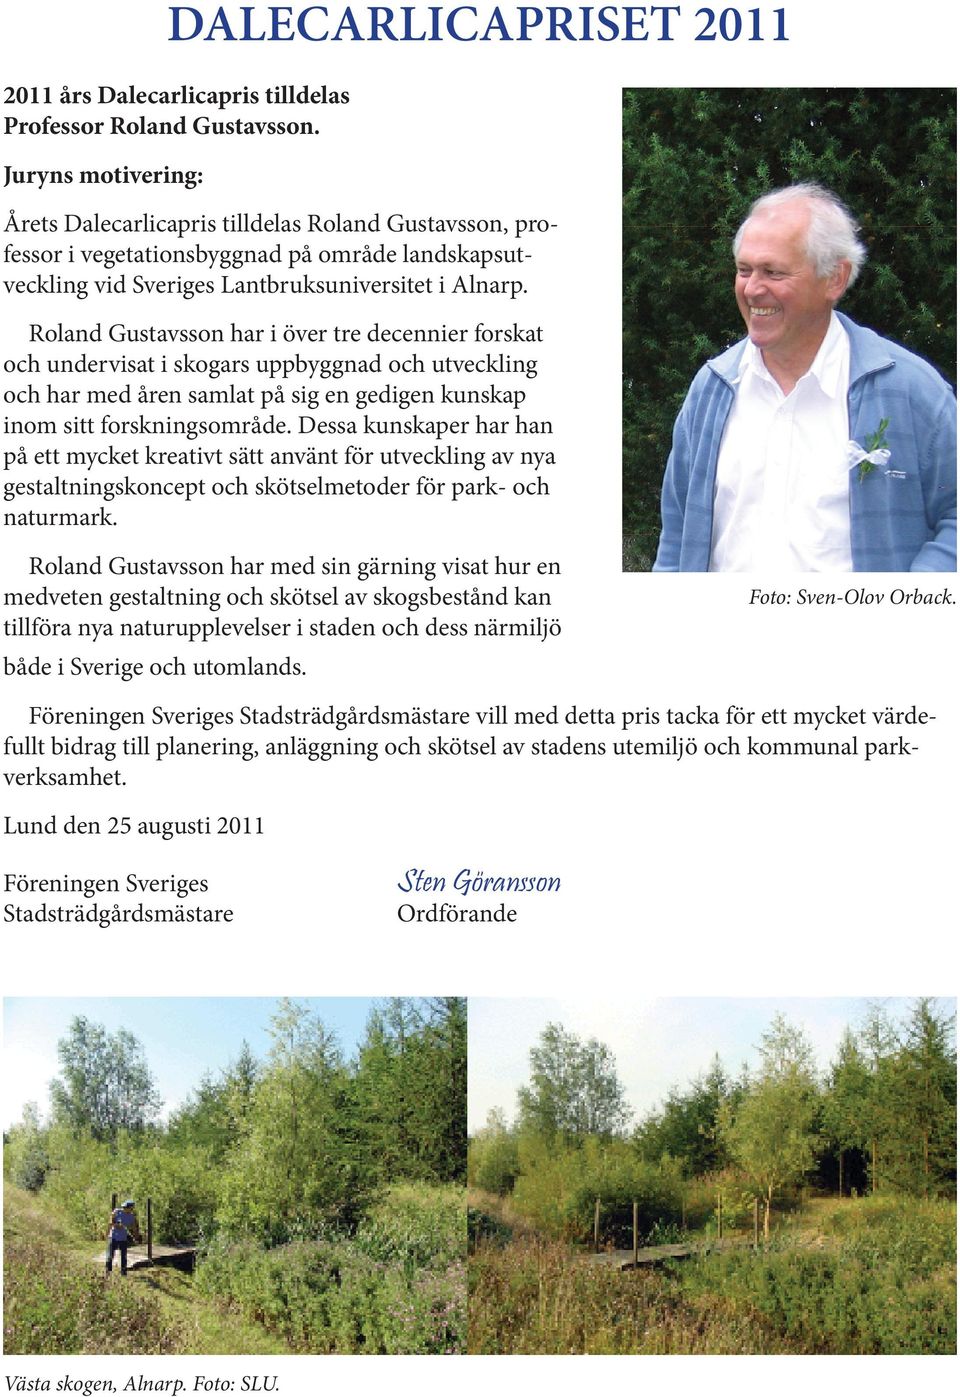 Roland Gustavsson har i över tre decennier forskat och undervisat i skogars uppbyggnad och utveckling och har med åren samlat på sig en gedigen kunskap inom sitt forskningsområde.